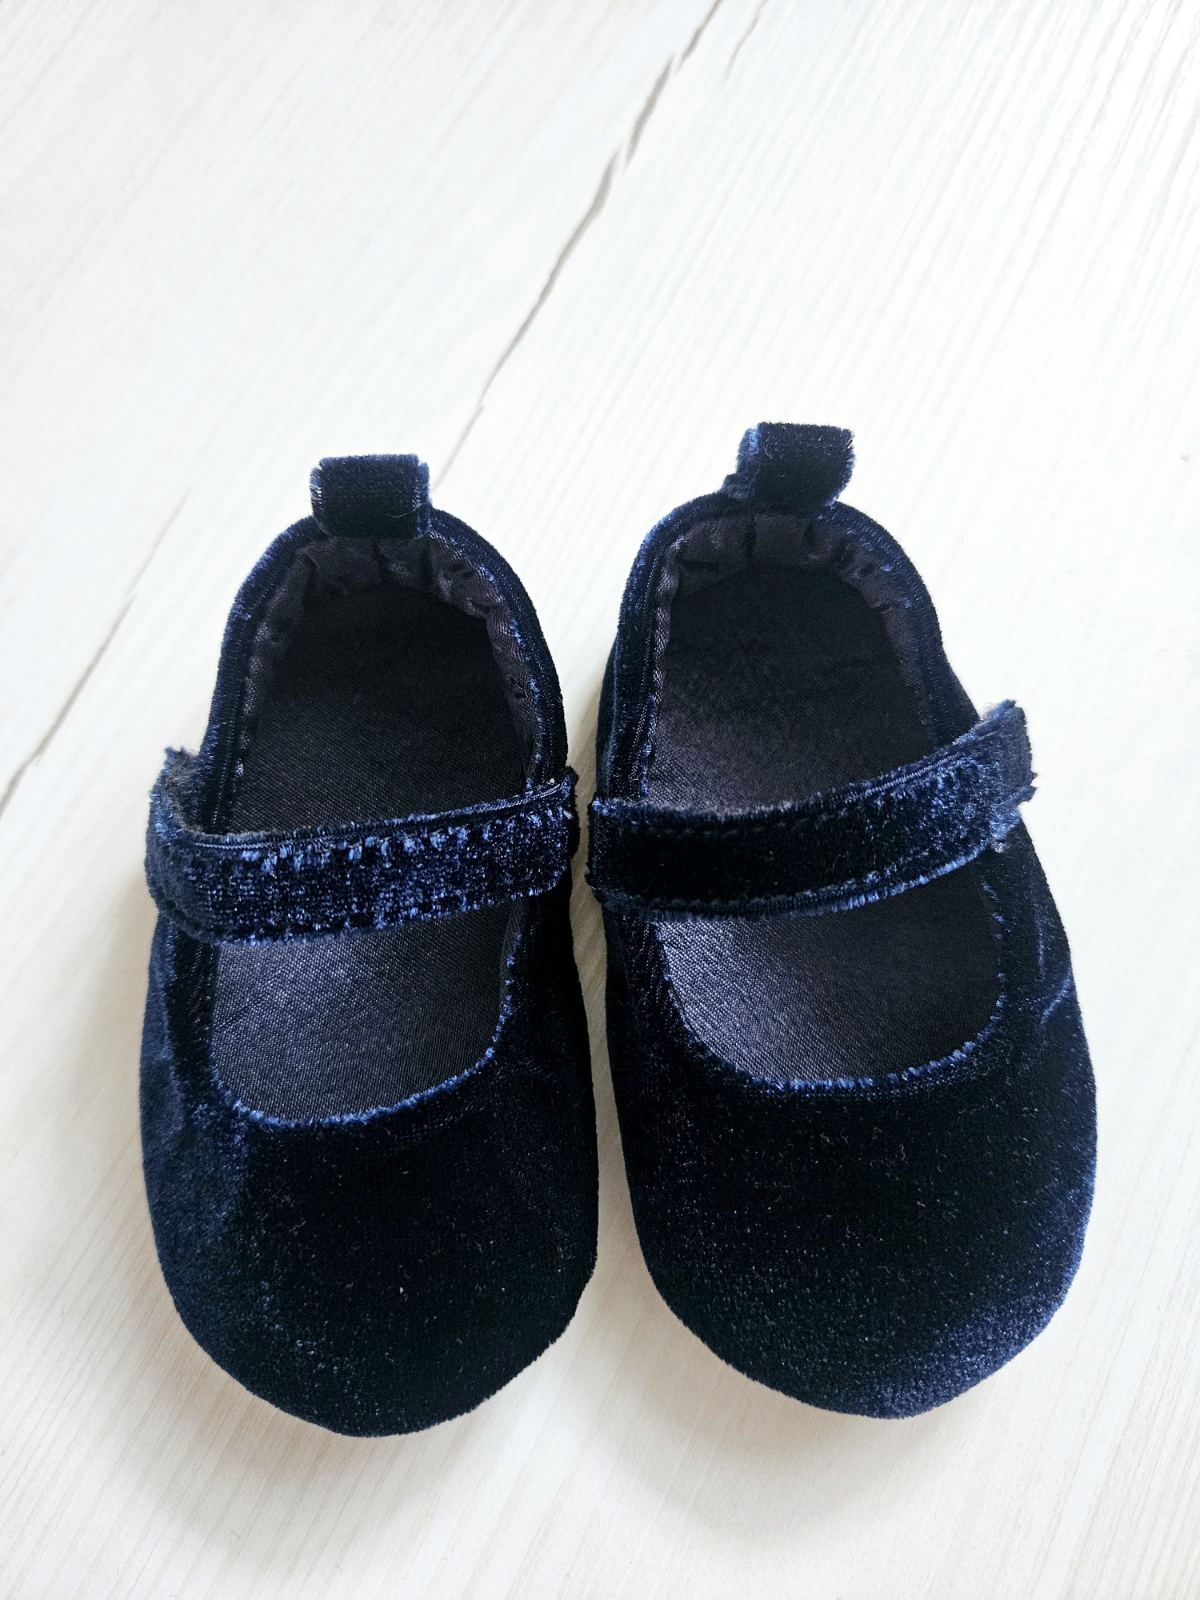 Пінетки для дівчинки 18розмір (11см), туфлі велюрові для малюків, OVS